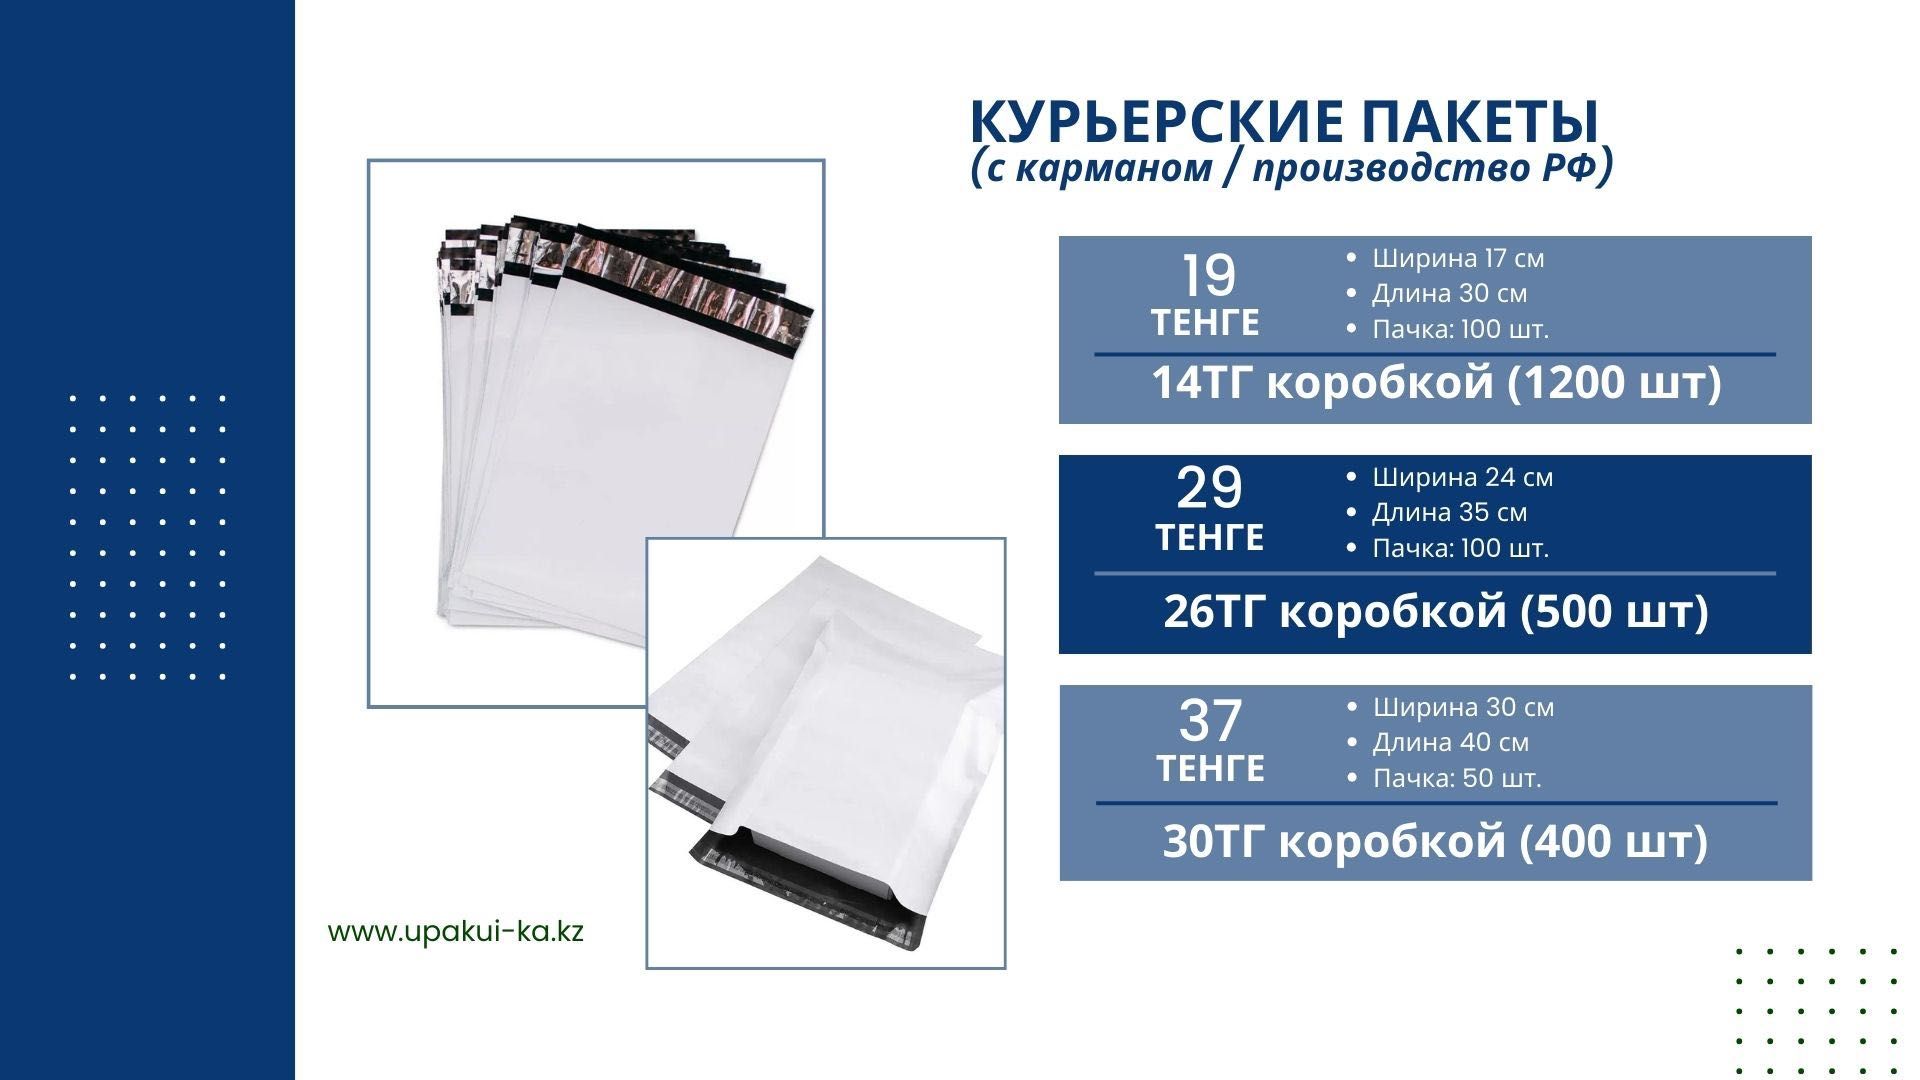 Курьер пакет с карманом для KASPI WB OZON 9тг от производителя